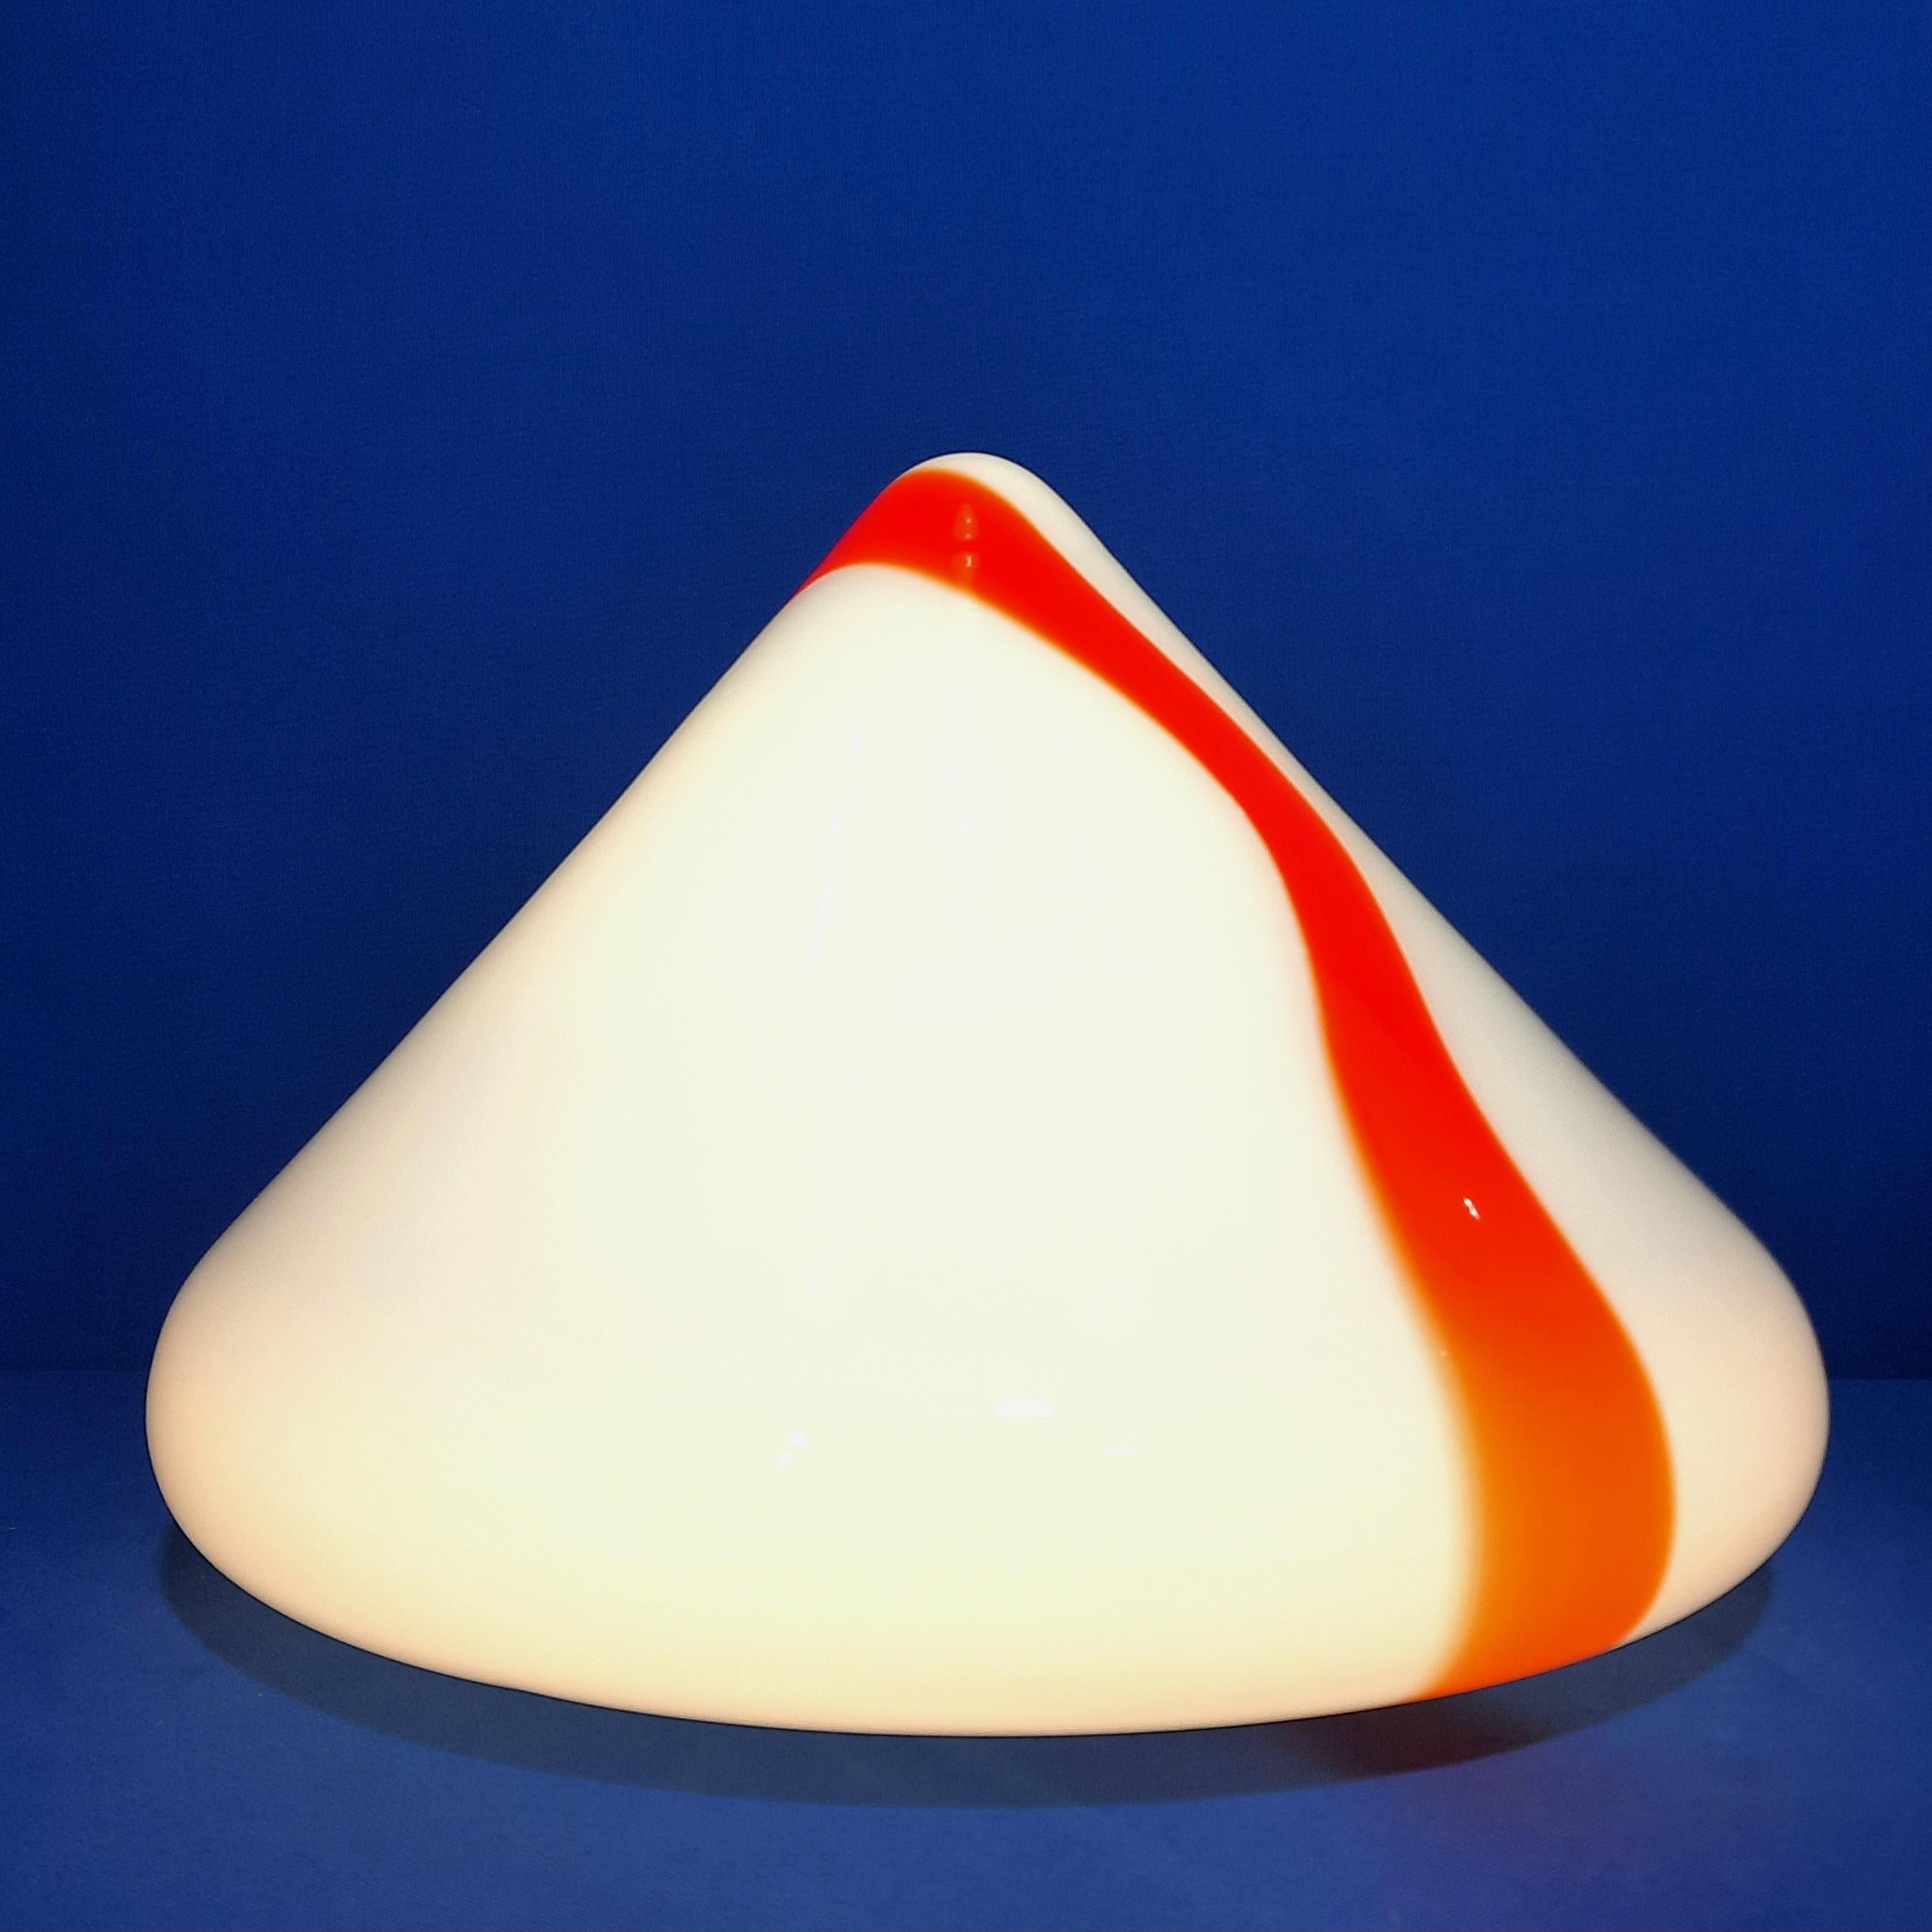 Renato Toso est un concepteur de lumière italien influent qui a apporté des contributions significatives au monde de la conception d'éclairage. Il a collaboré avec la célèbre société d'éclairage Leucos, entre autres cabinets de design de premier